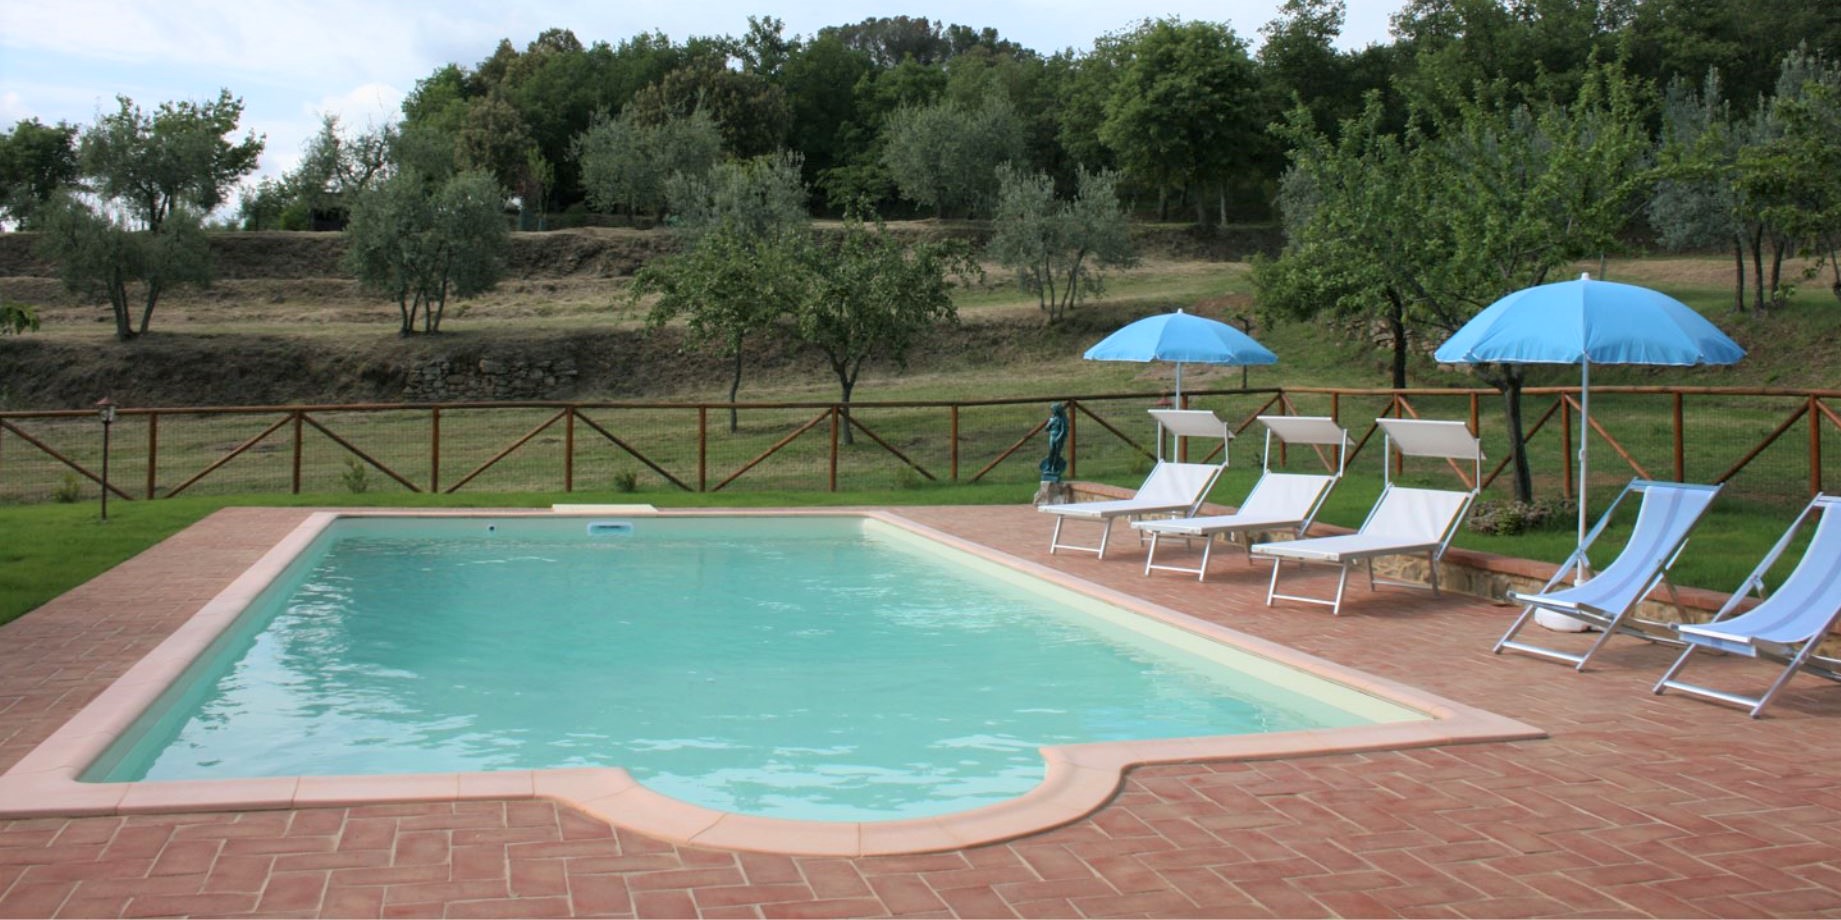 411_d213cd7_411_076d85b_Podere Capanna vakantiehuis met prive zwembad Toscane Arezzo Siena